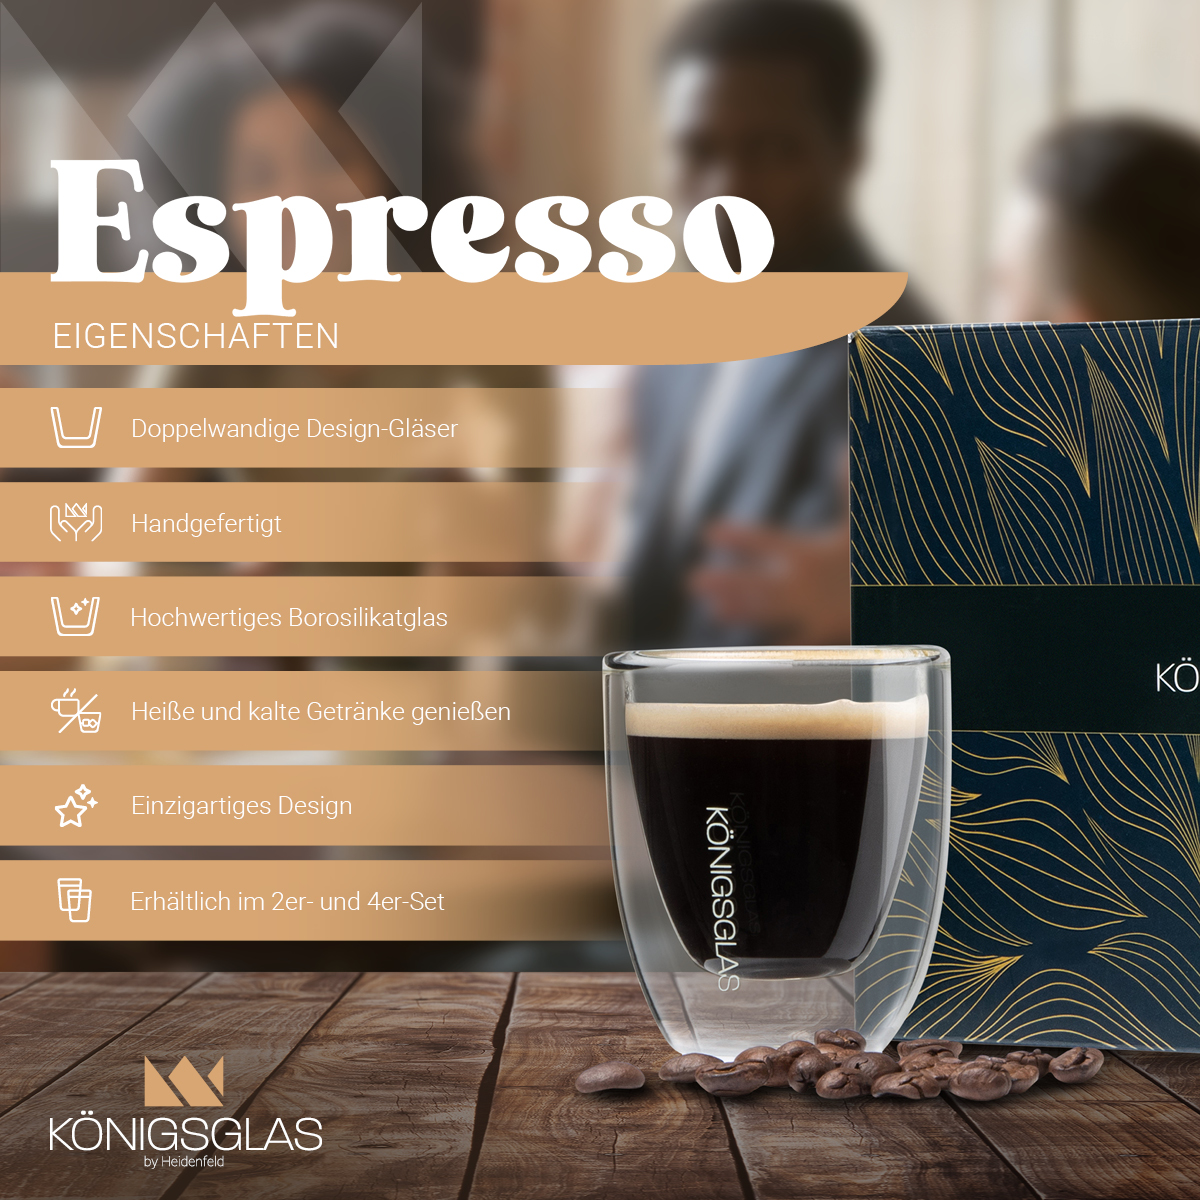 Königsglas 80 4x ml HEIDENFELD Espresso Kaffeegläser